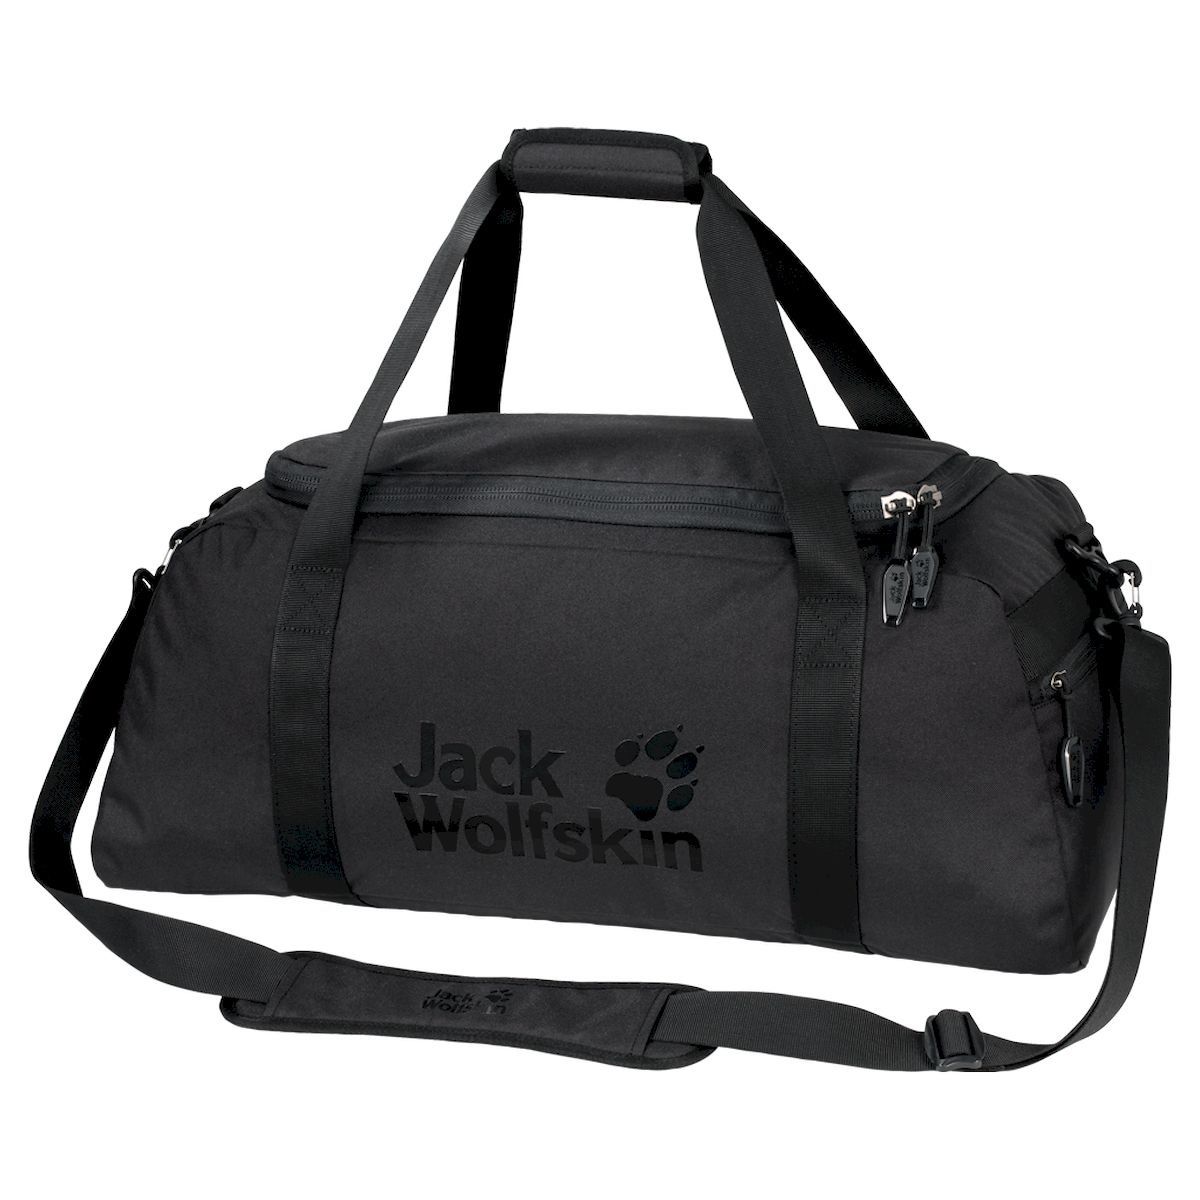  Jack Wolfskin Action Bag 45, 2007251-6000, 